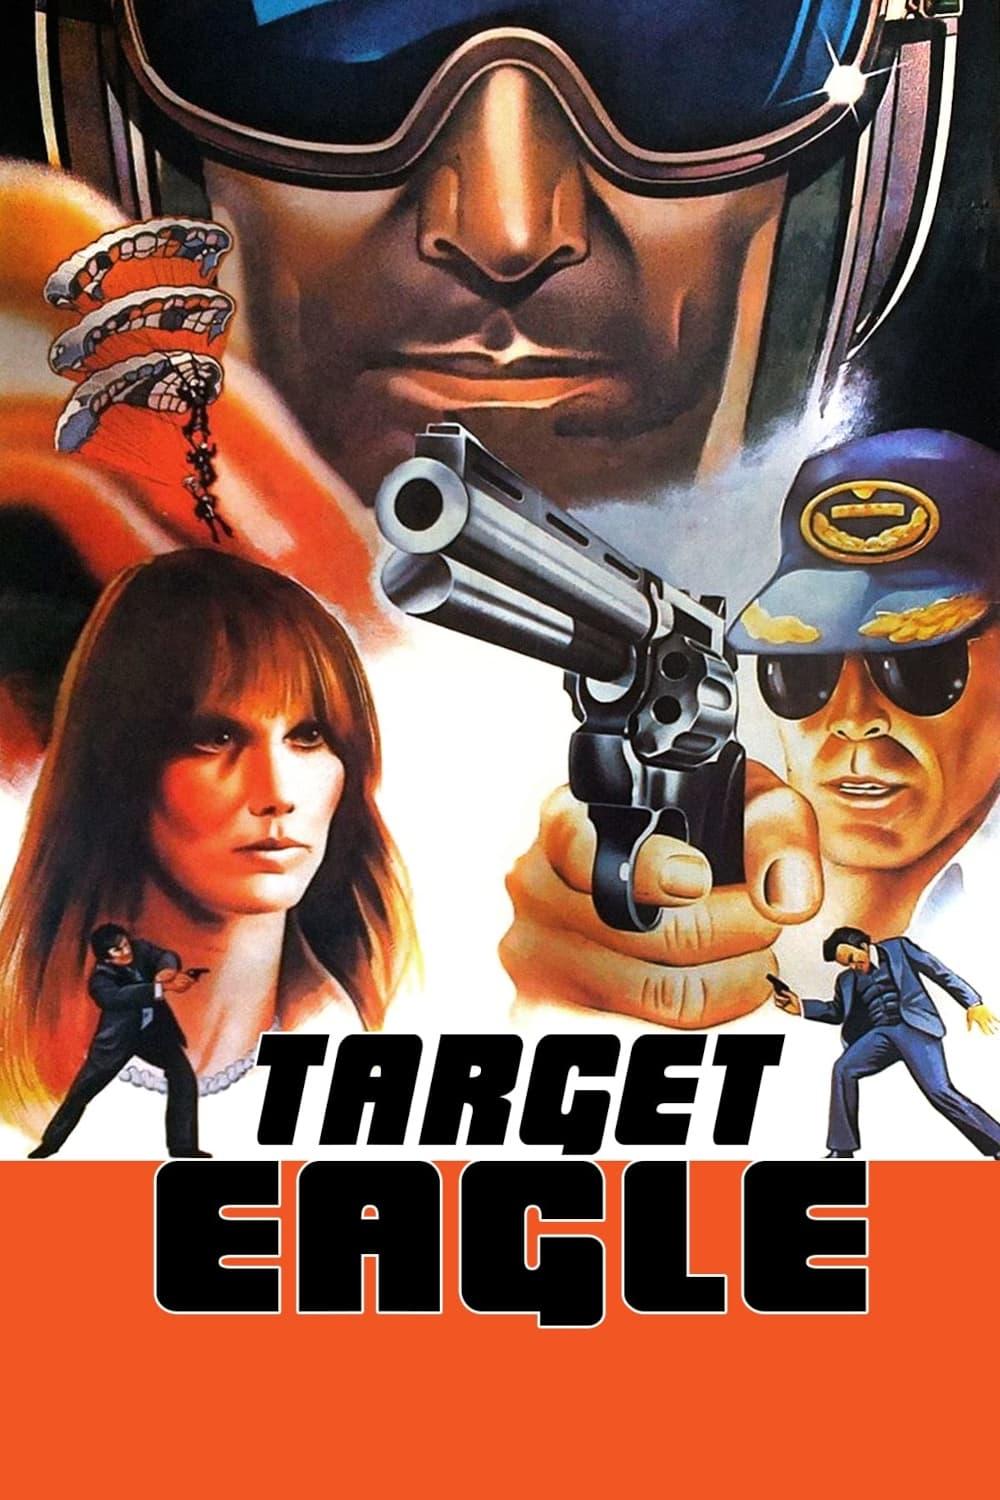 Target Eagle poster